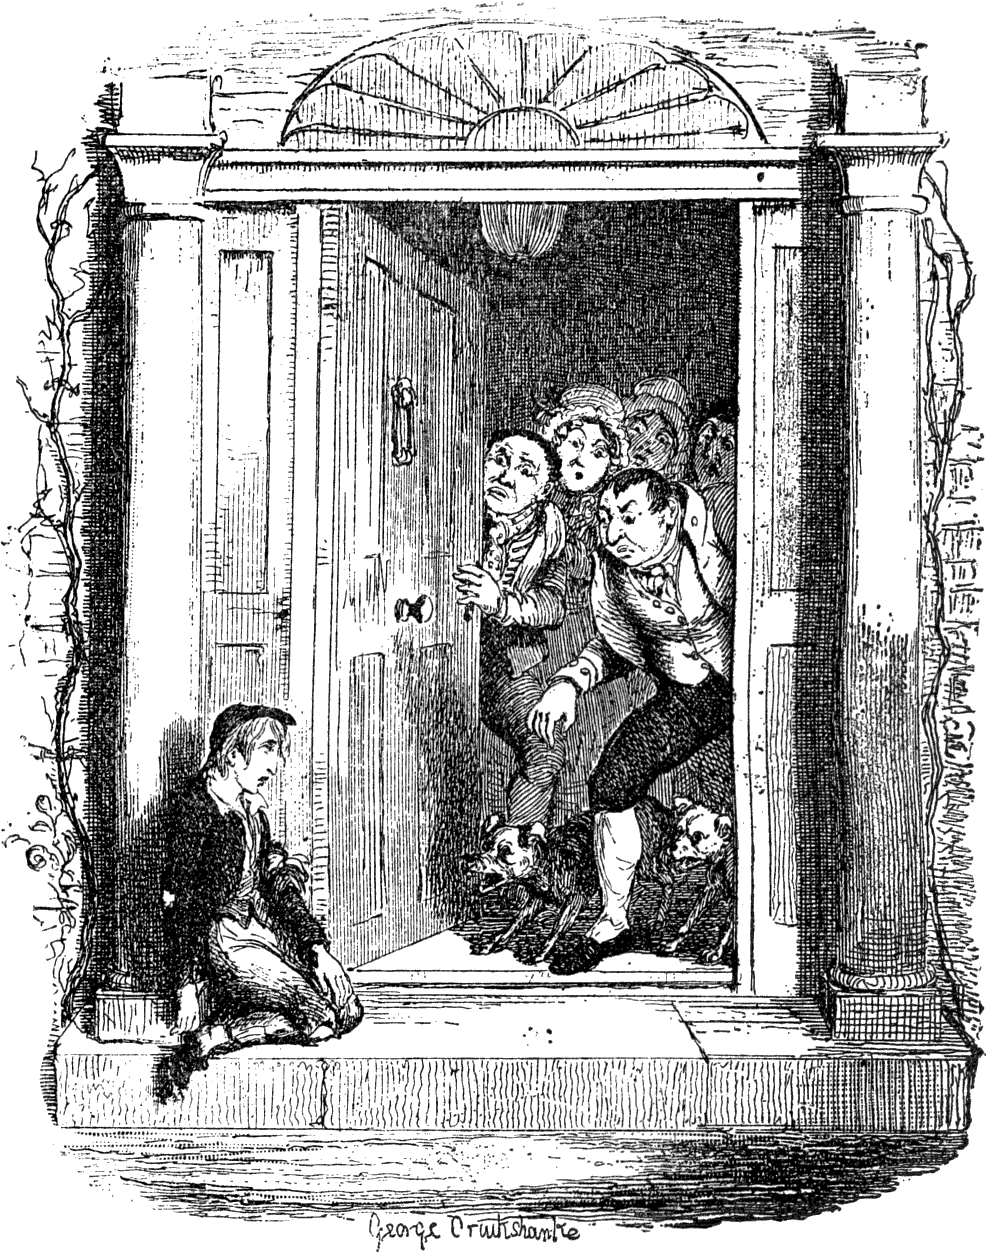 Verwonderend The Project Gutenberg eBook of De avonturen van Oliver Twist, by LU-91